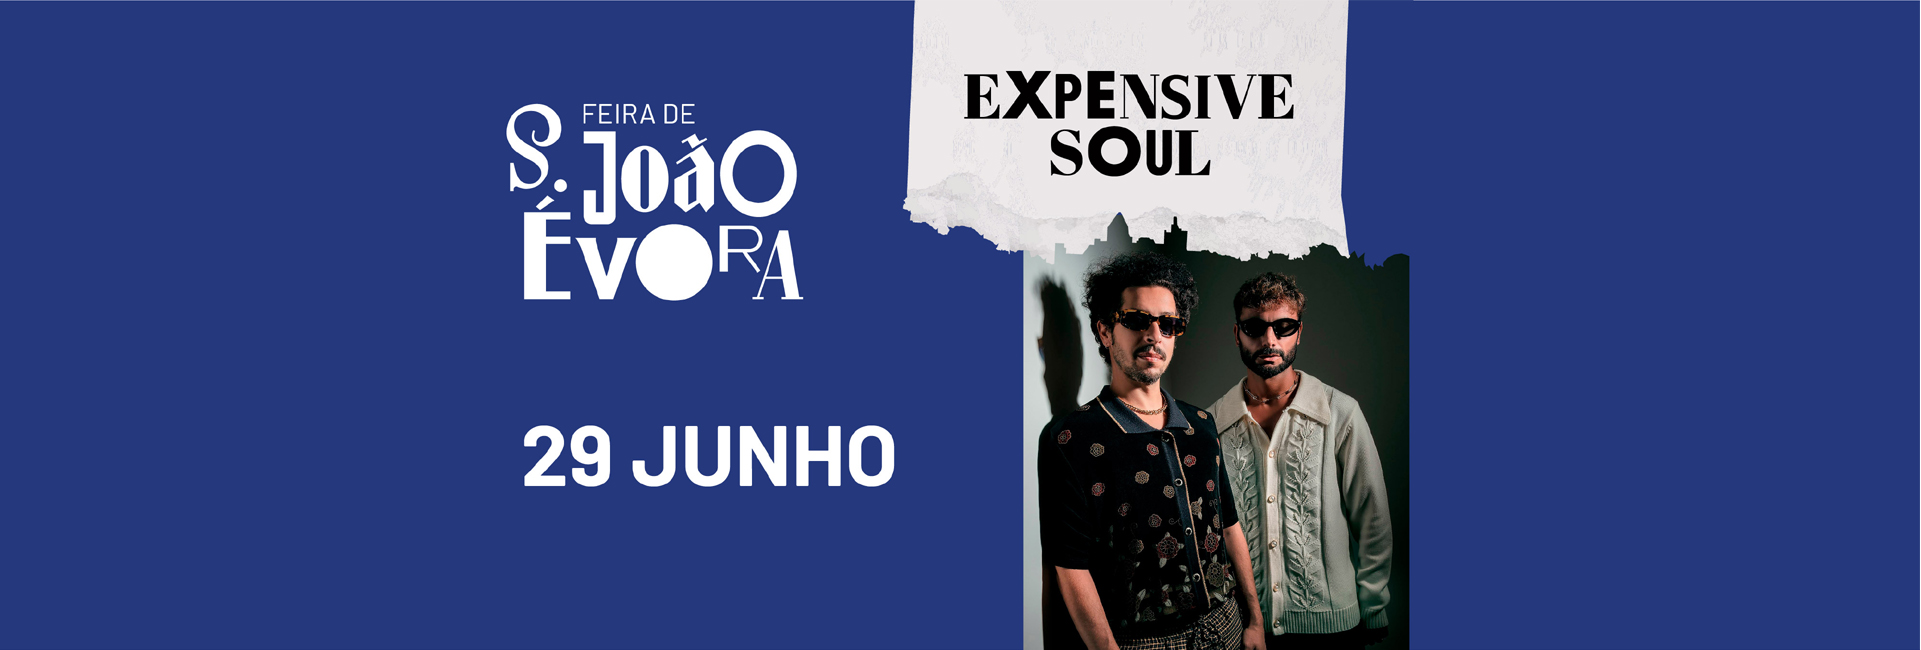 (Português) EXPENSIVE SOUL | Feira de S. João 2022